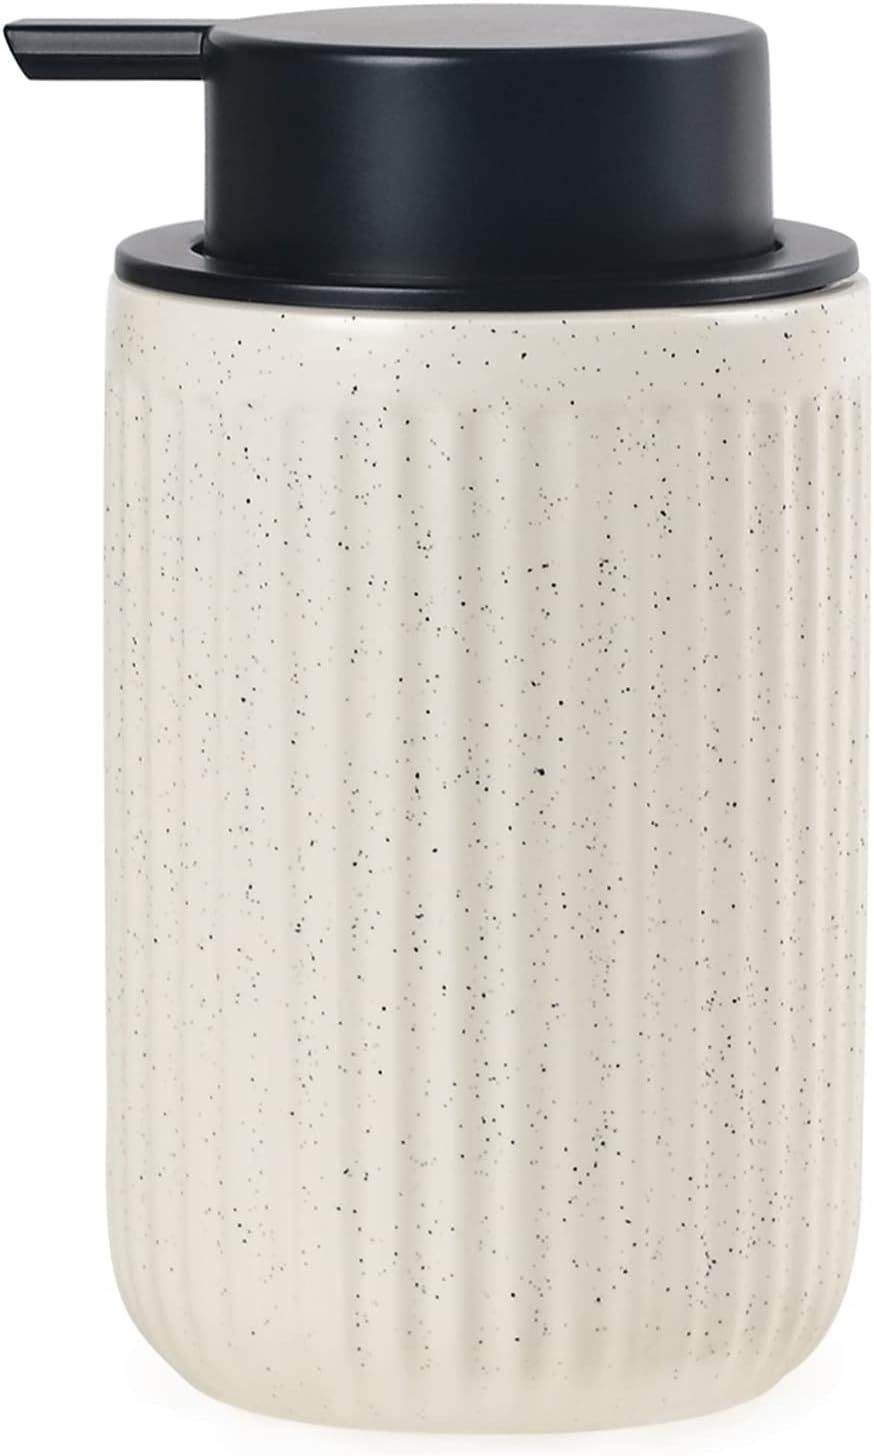 BosilunLife Dish Hand Soap Dispenser - Liquid Pump Soap Dispenser for Bathroom Decro 12oz Ceramic... | Amazon (US)